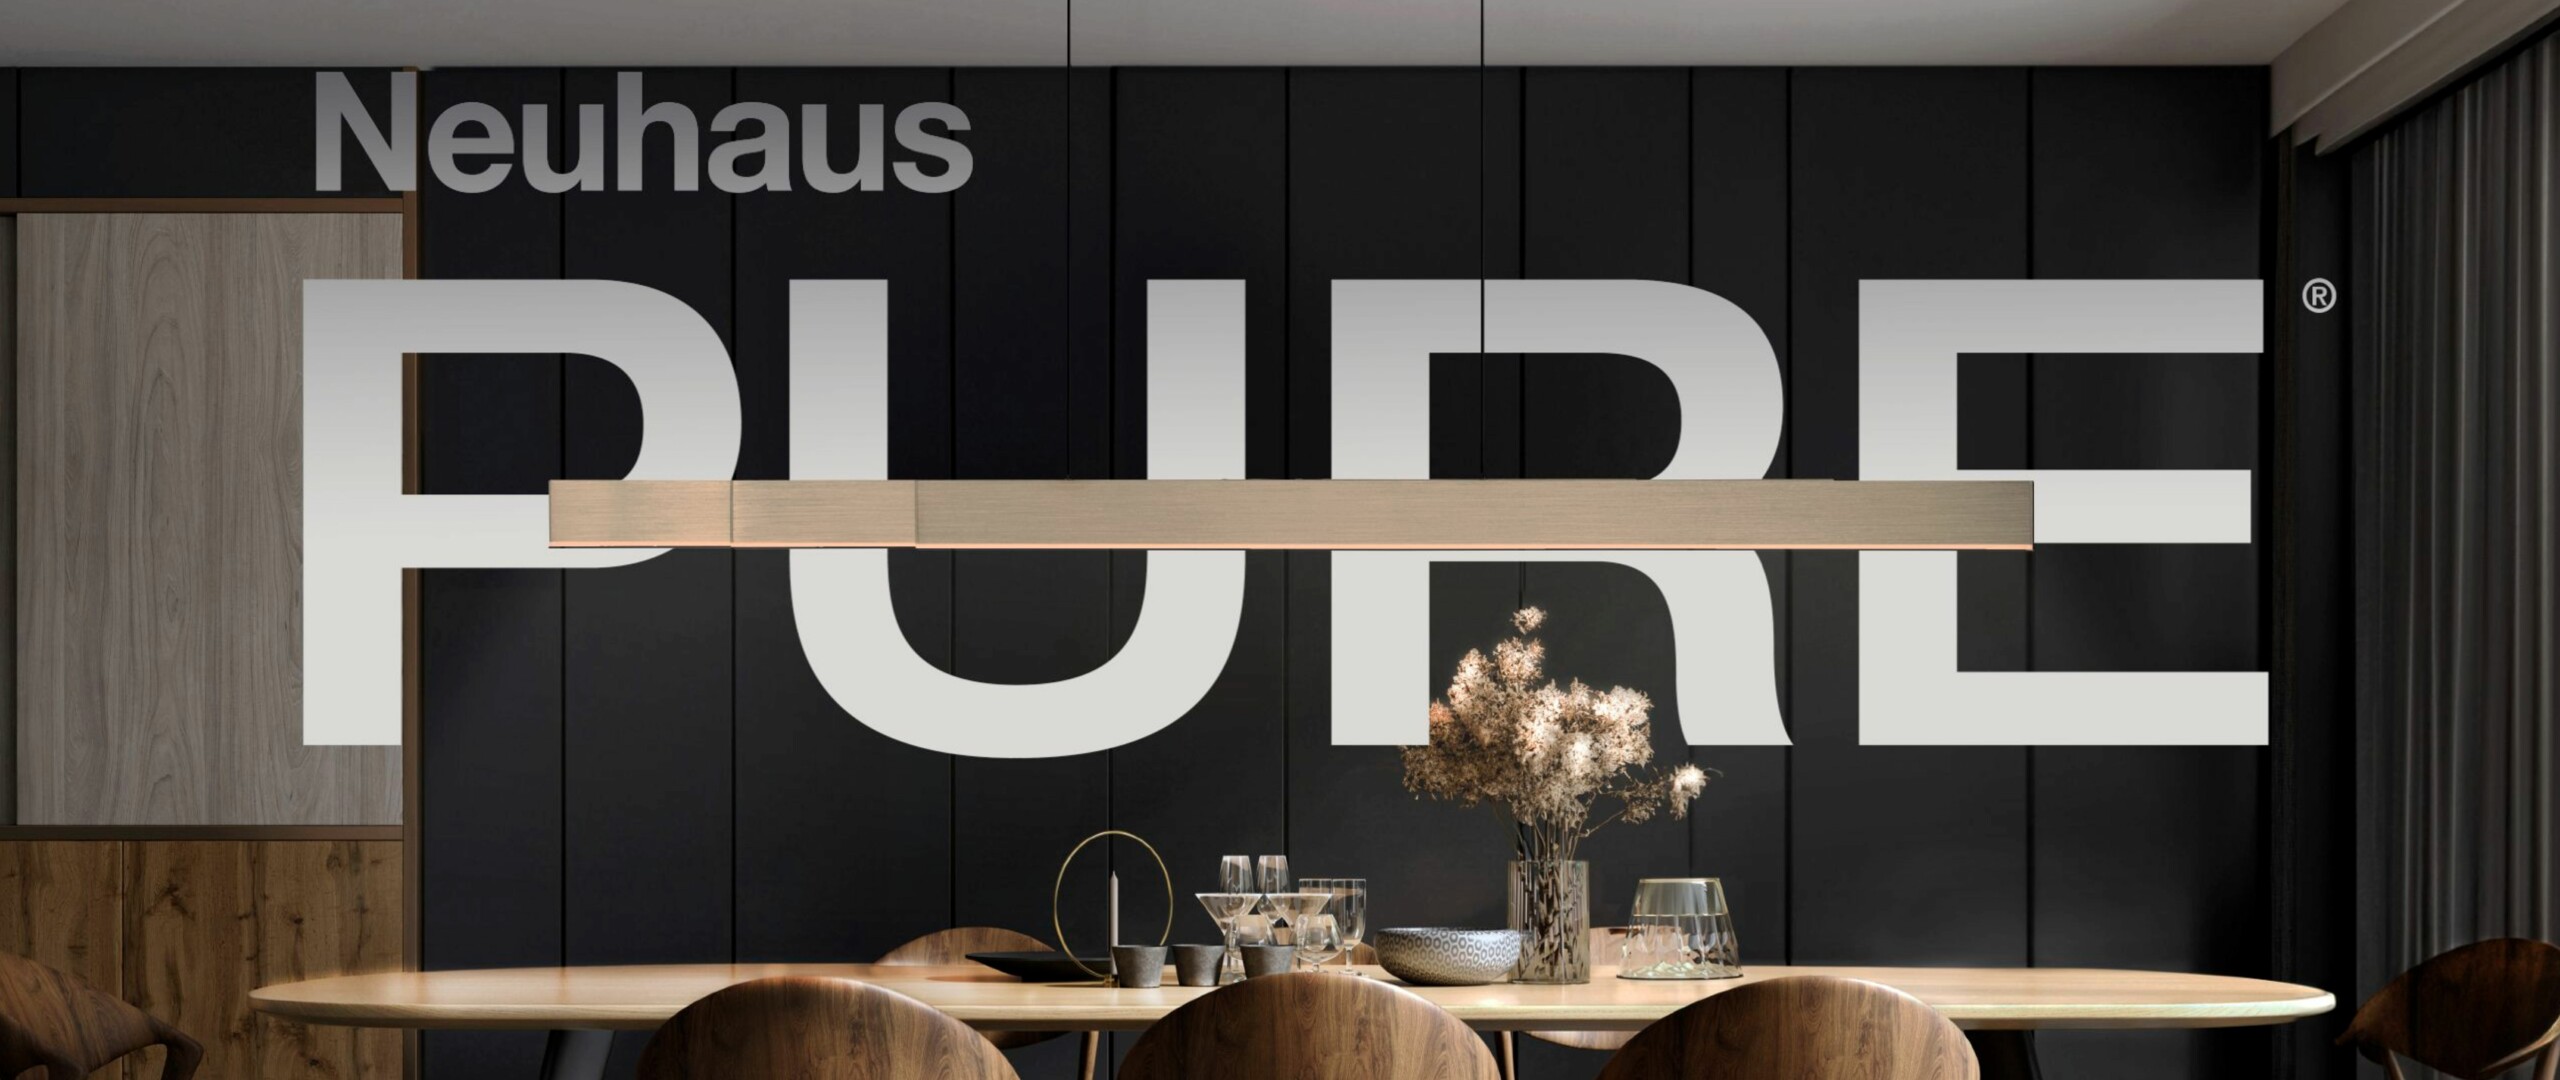 Paul Neuhaus GmbH